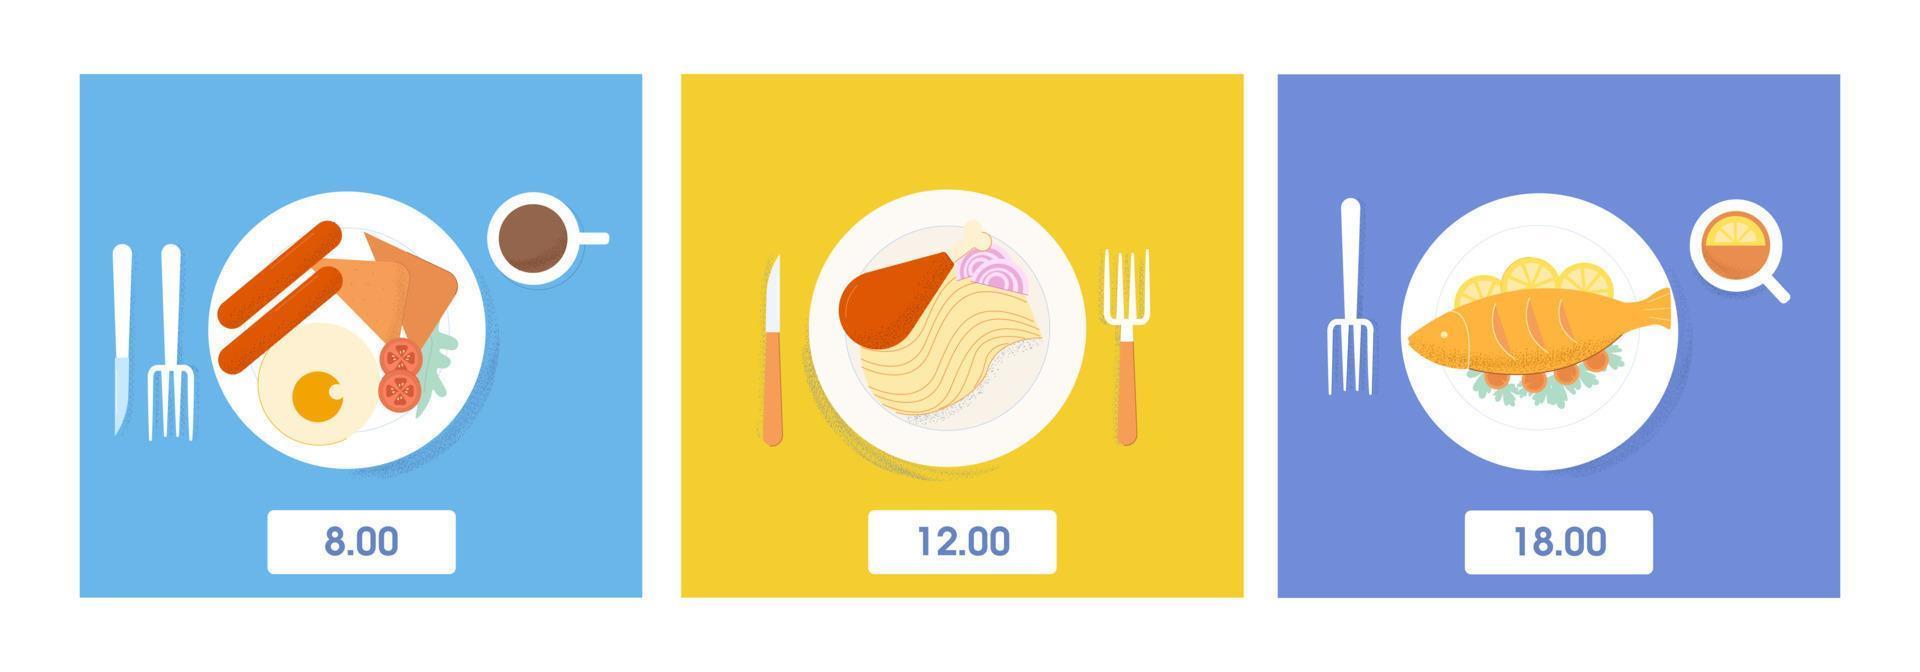 satz zum servieren von essen und trinken abendessen, mittagessen und frühstück draufsicht vektor flache illustration